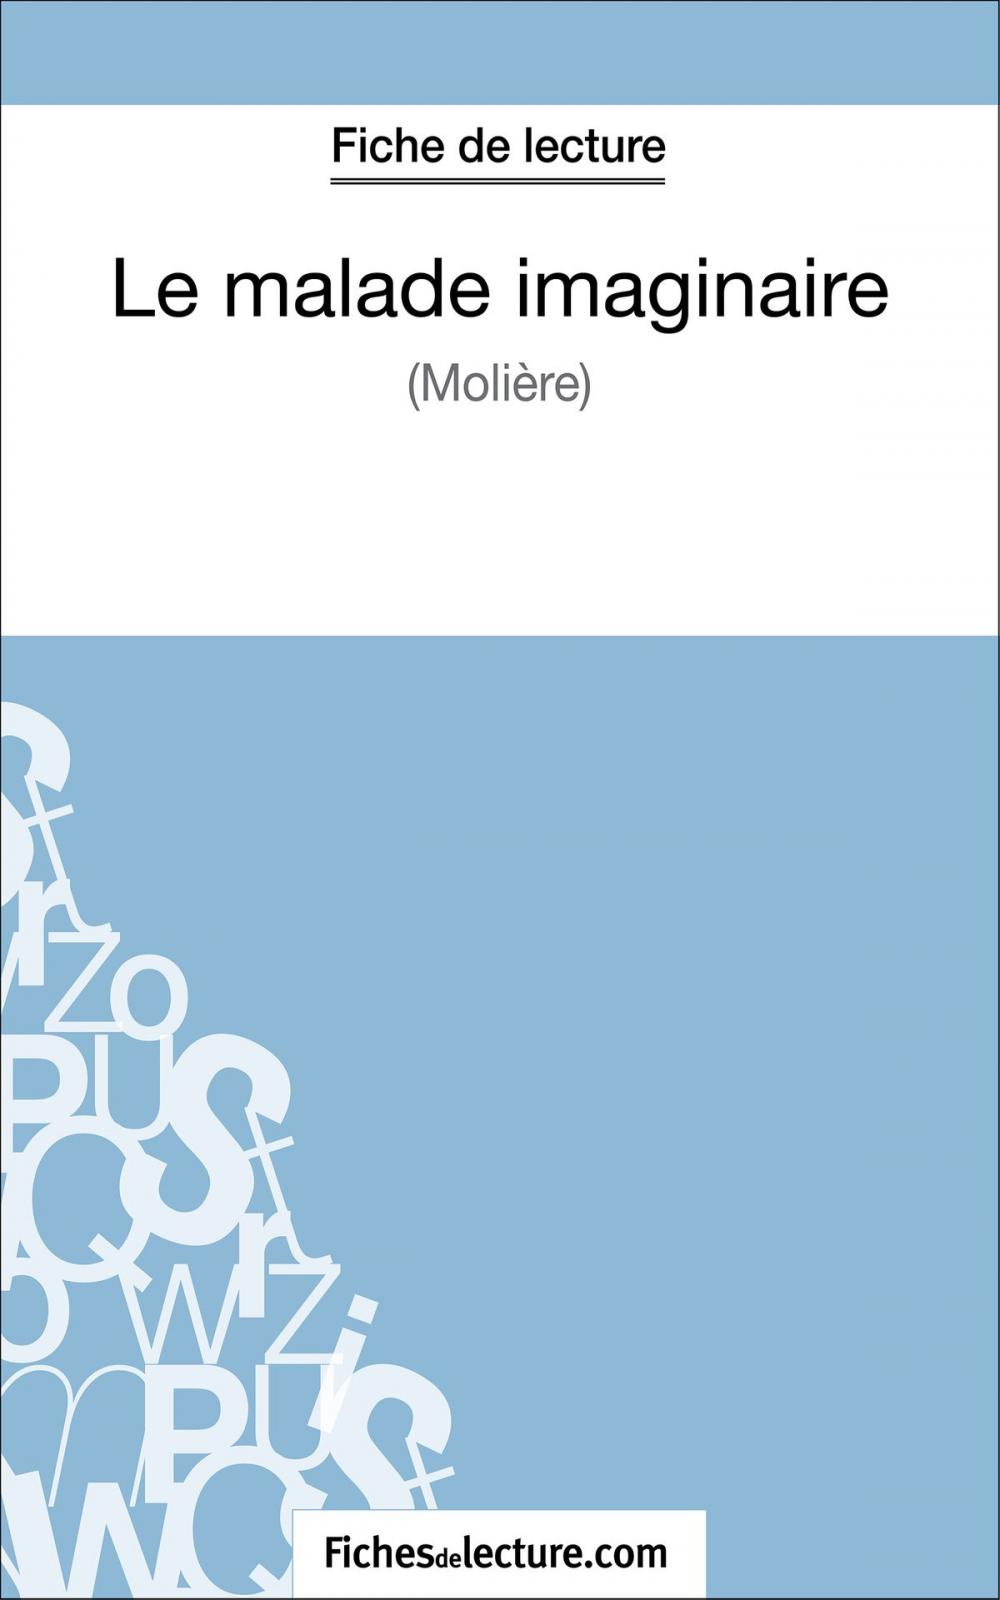 Big bigCover of Le malade imaginaire de Molière (Fiche de lecture)